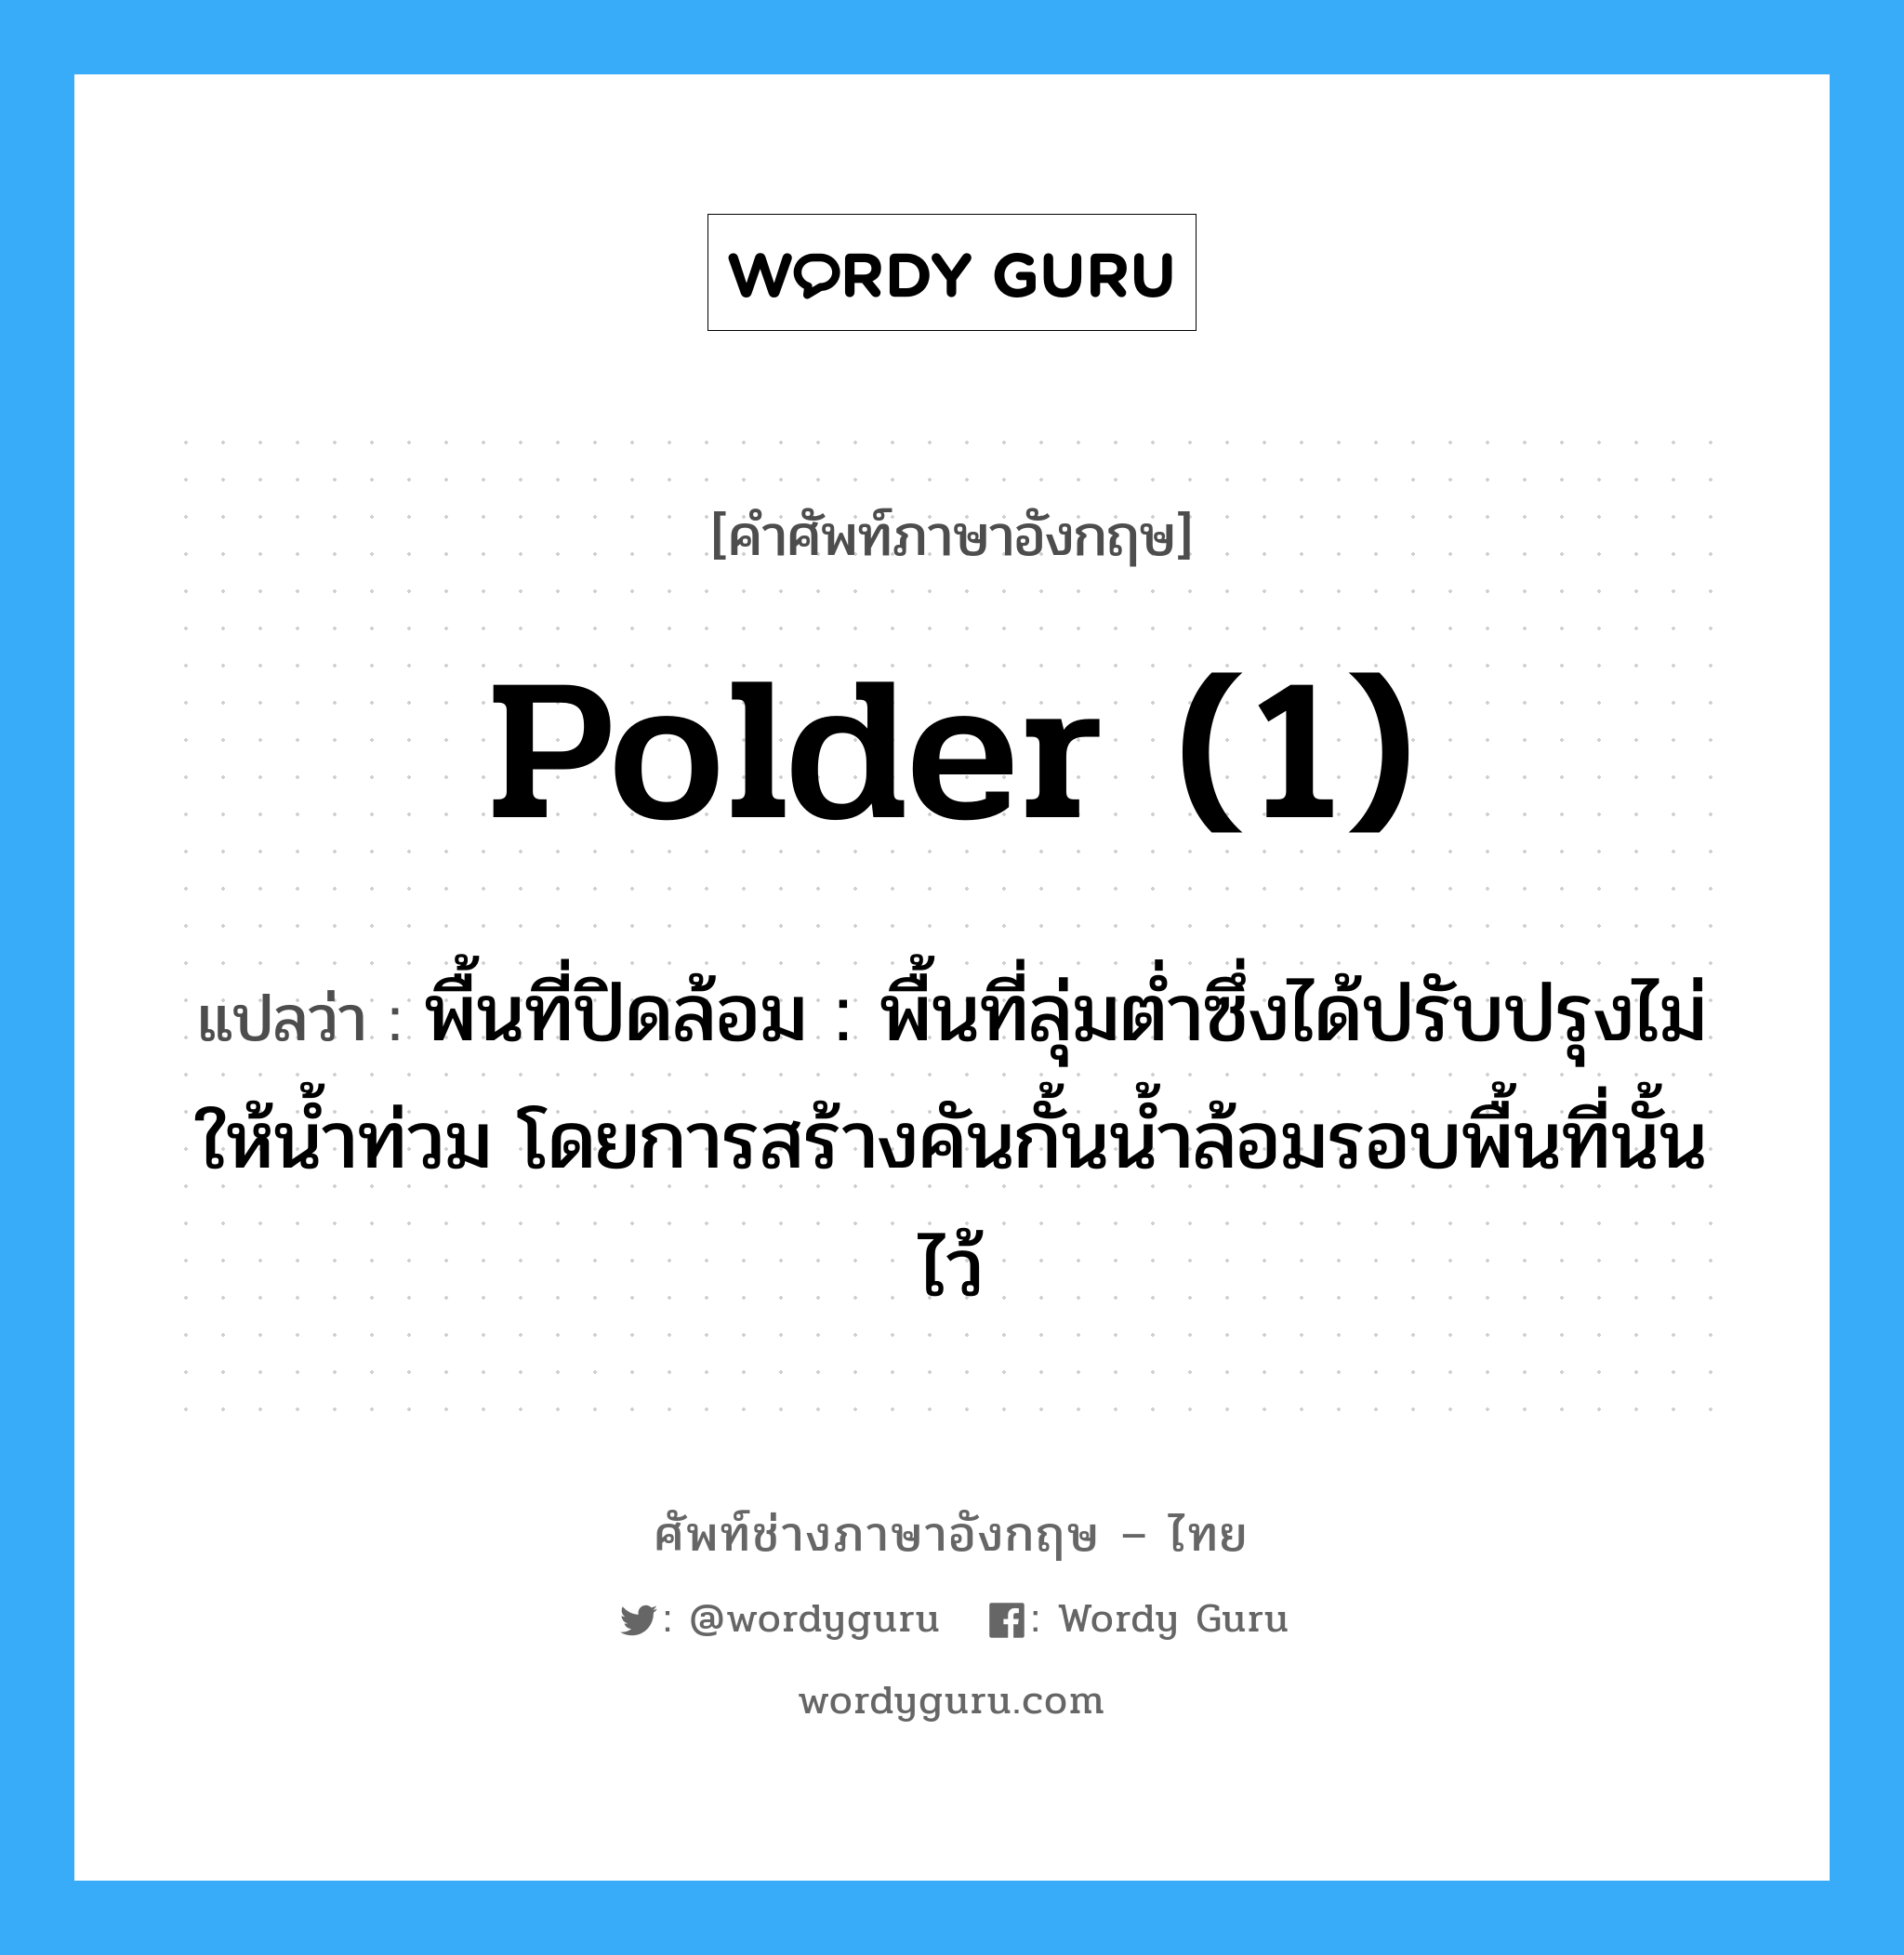 polder (1) แปลว่า?, คำศัพท์ช่างภาษาอังกฤษ - ไทย polder (1) คำศัพท์ภาษาอังกฤษ polder (1) แปลว่า พื้นที่ปิดล้อม : พื้นที่ลุ่มต่ำซึ่งได้ปรับปรุงไม่ให้น้ำท่วม โดยการสร้างคันกั้นน้ำล้อมรอบพื้นที่นั้นไว้